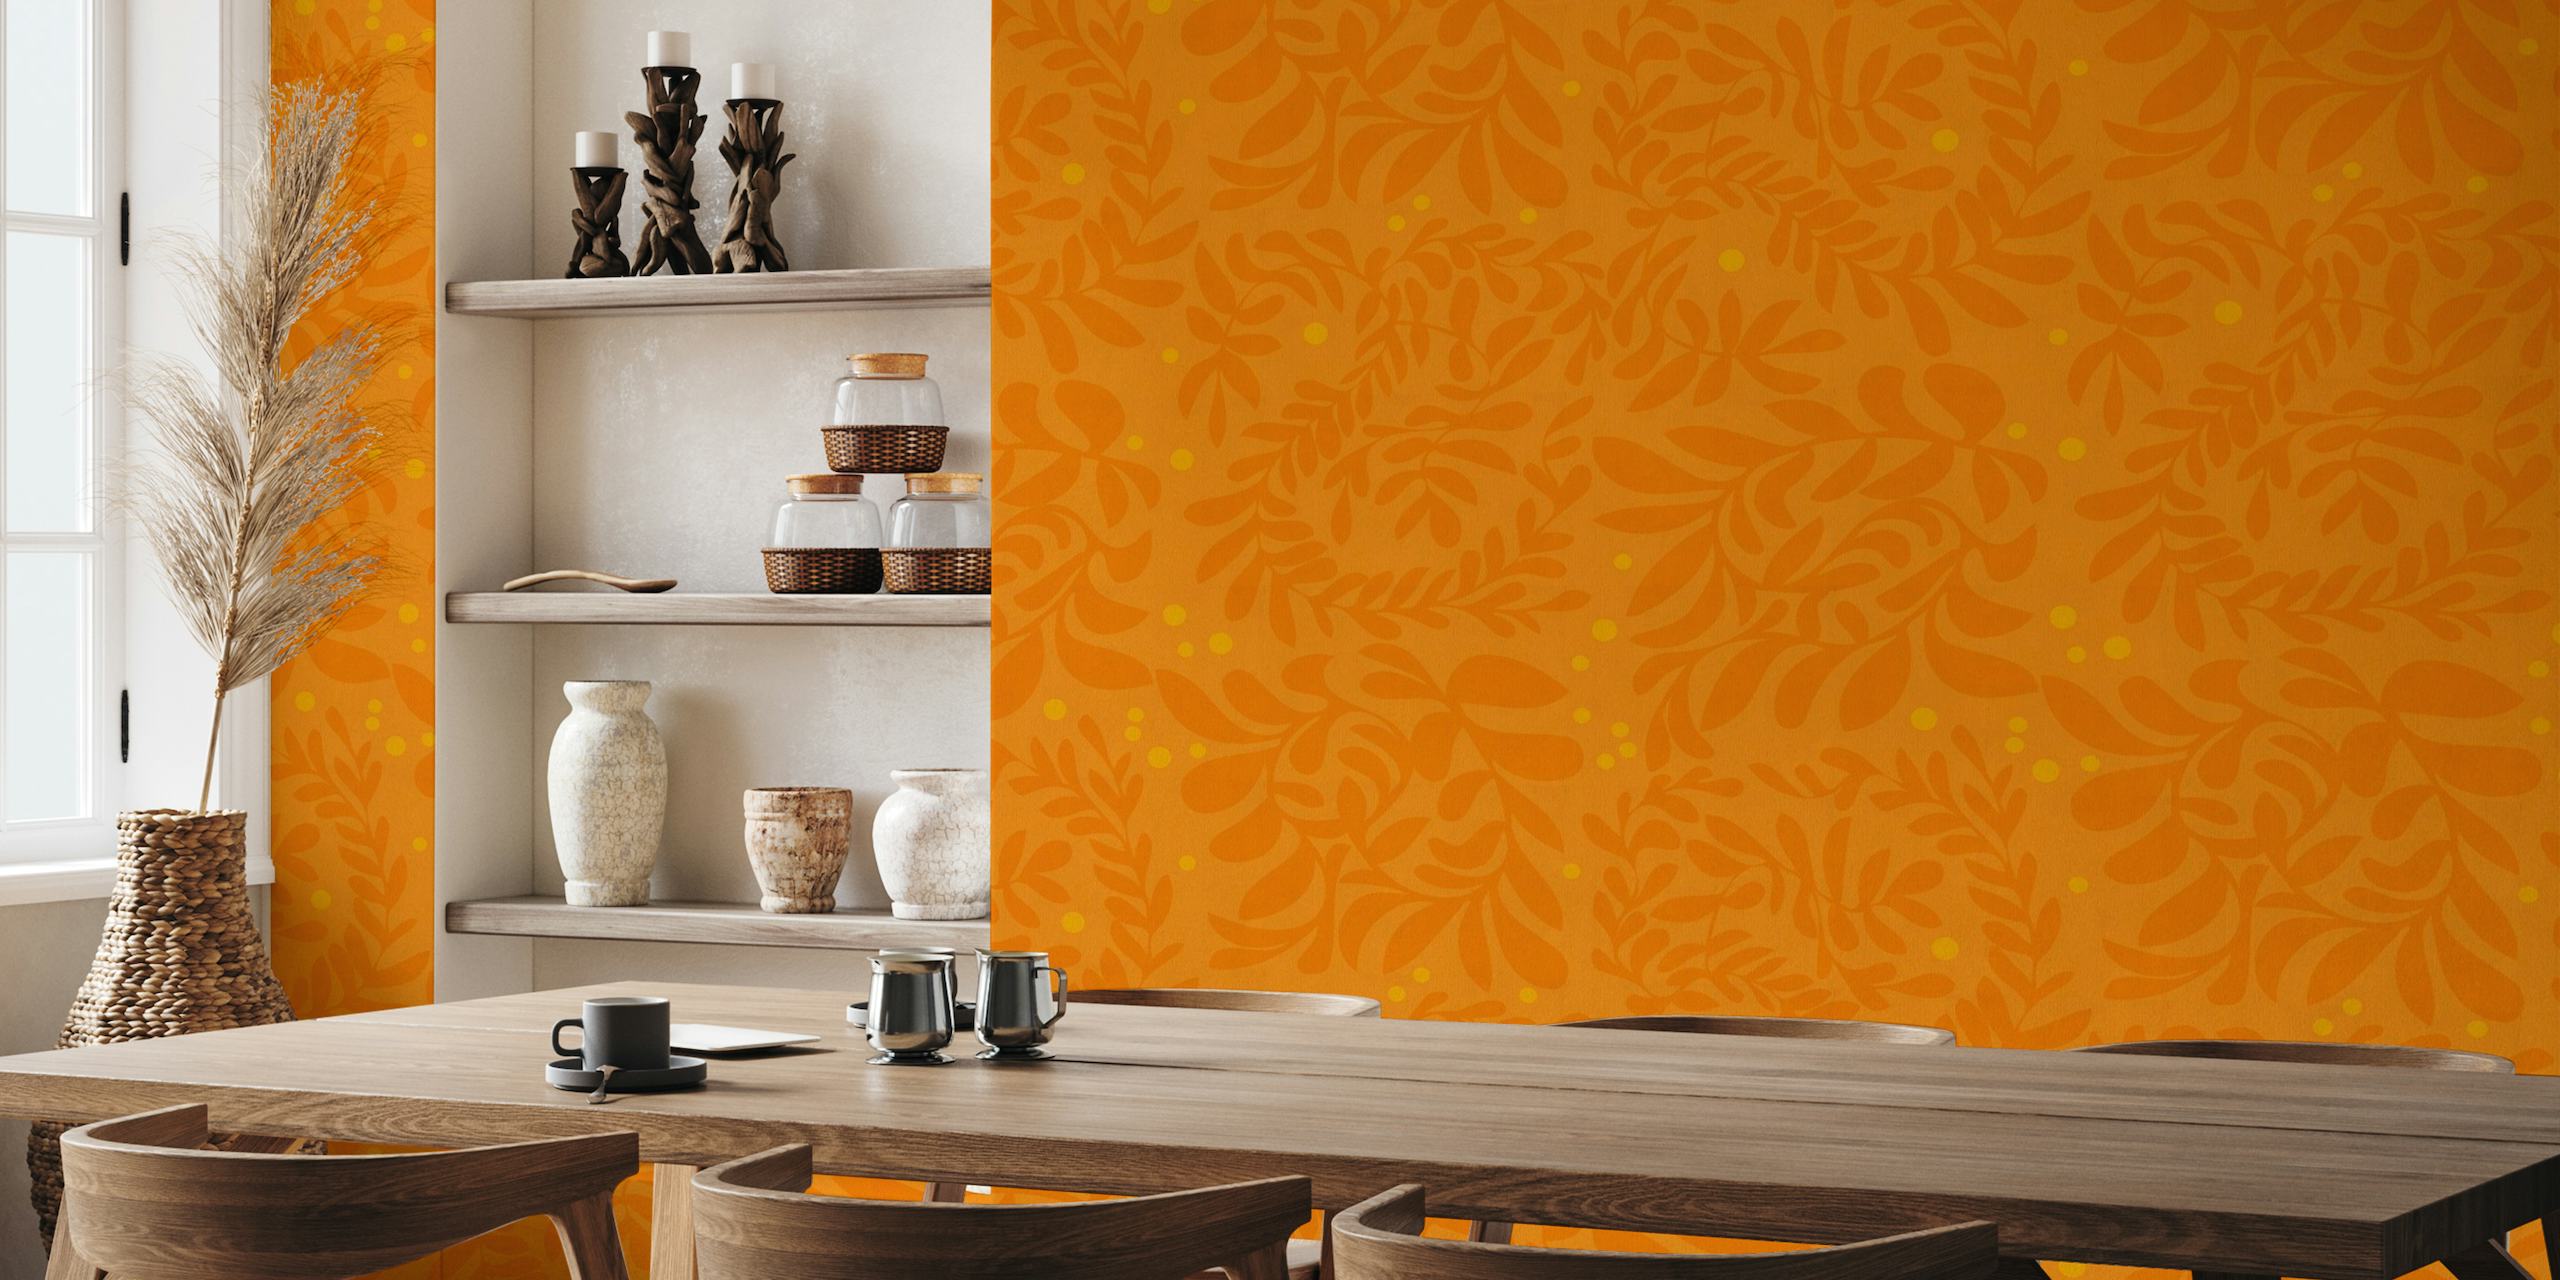 Mural de parede inspirado no outono com um padrão de folha em um fundo laranja.